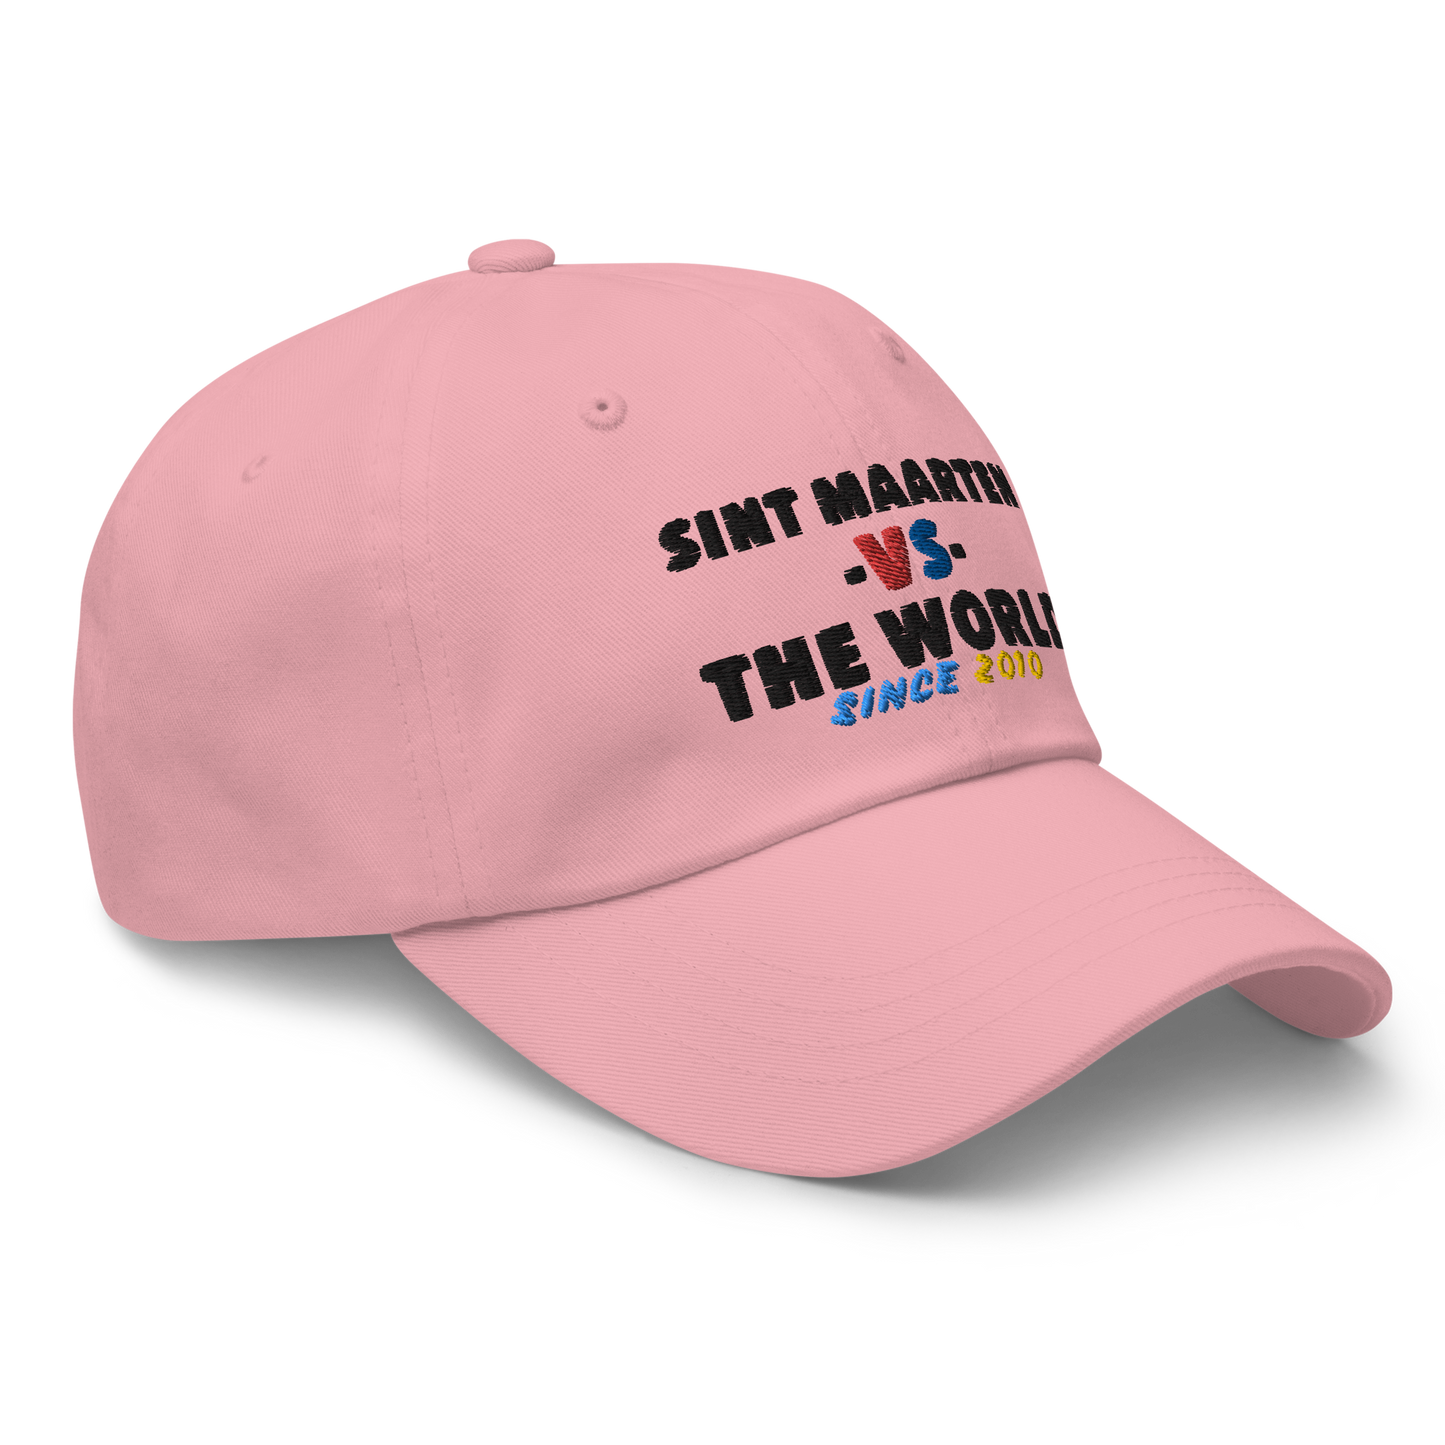 Sint Maarten -vs- The World Dad hat